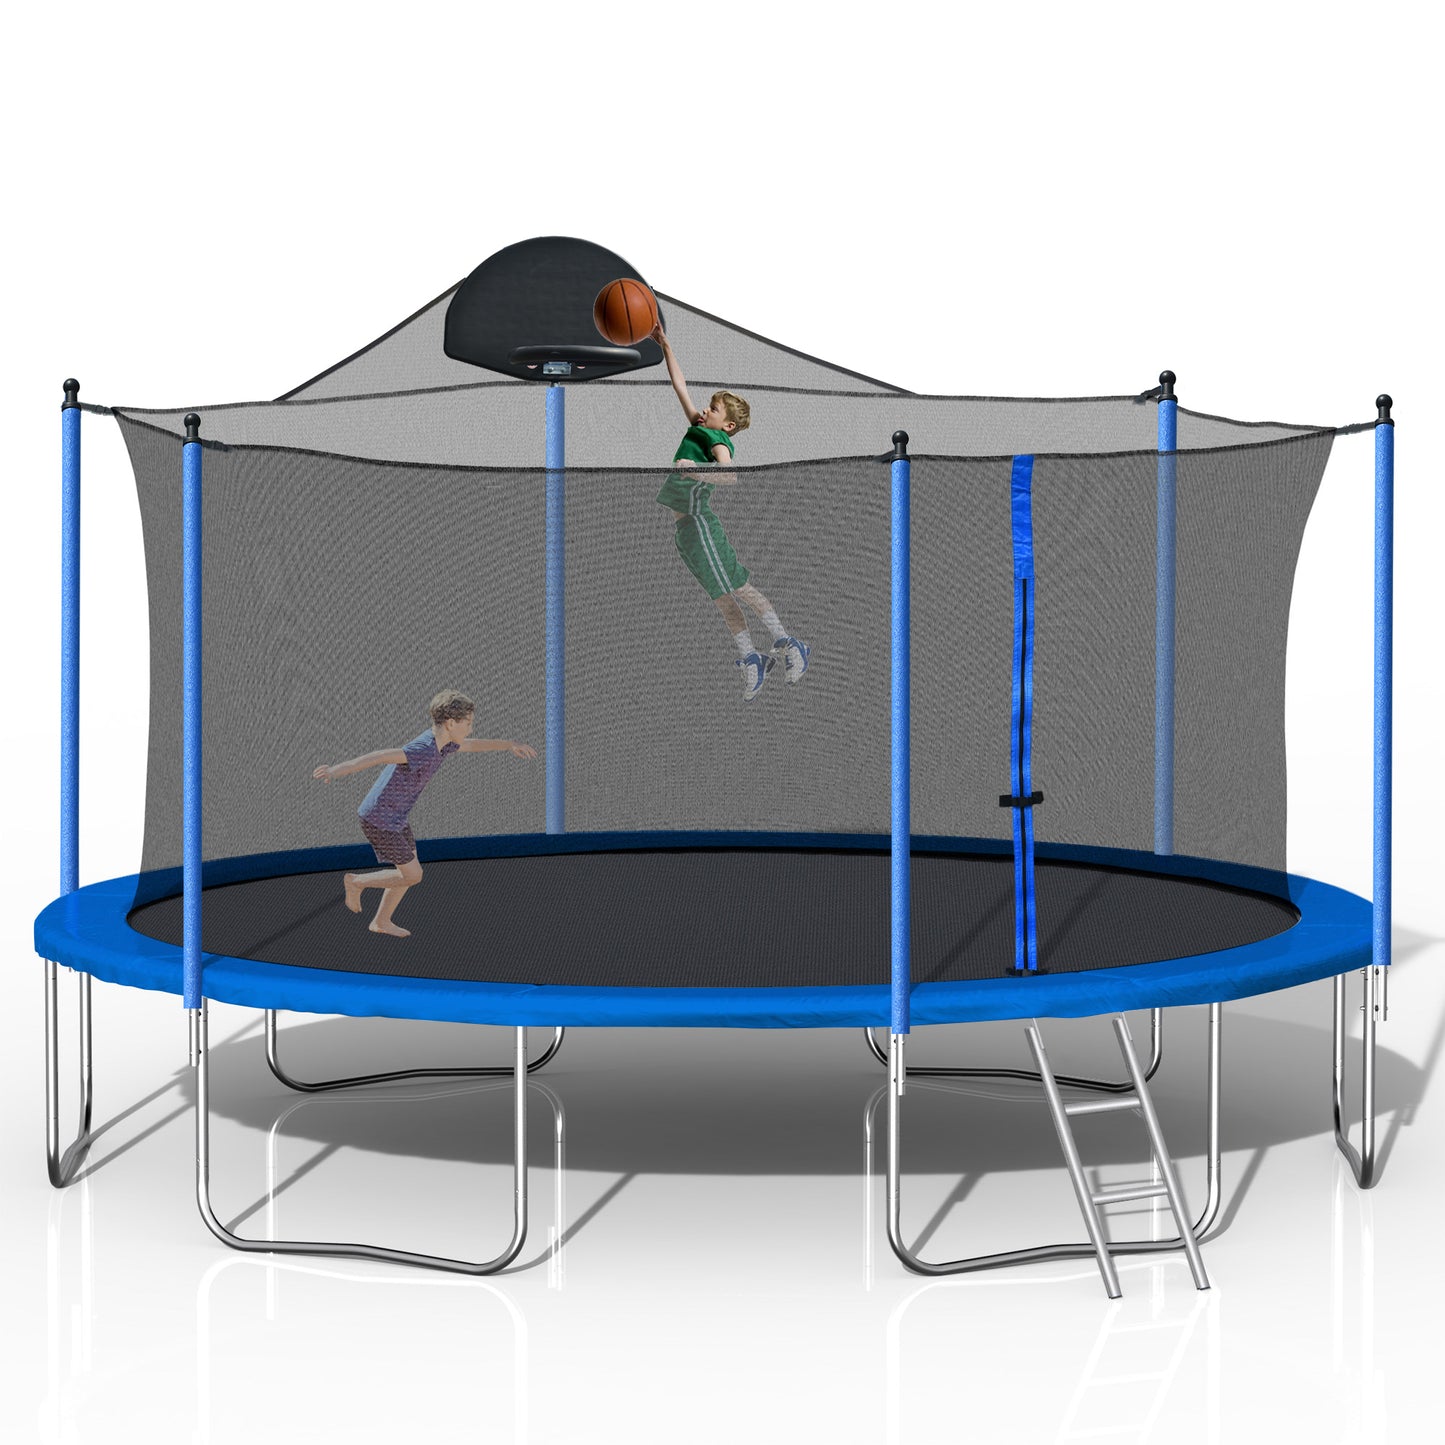 14-Fuß-Trampolin für Erwachsene und Kinder mit Basketballkorb, Outdoor-Trampoline mit Leiter und Sicherheitsnetz für Kinder und Erwachsene, doppelseitige Farbabdeckung